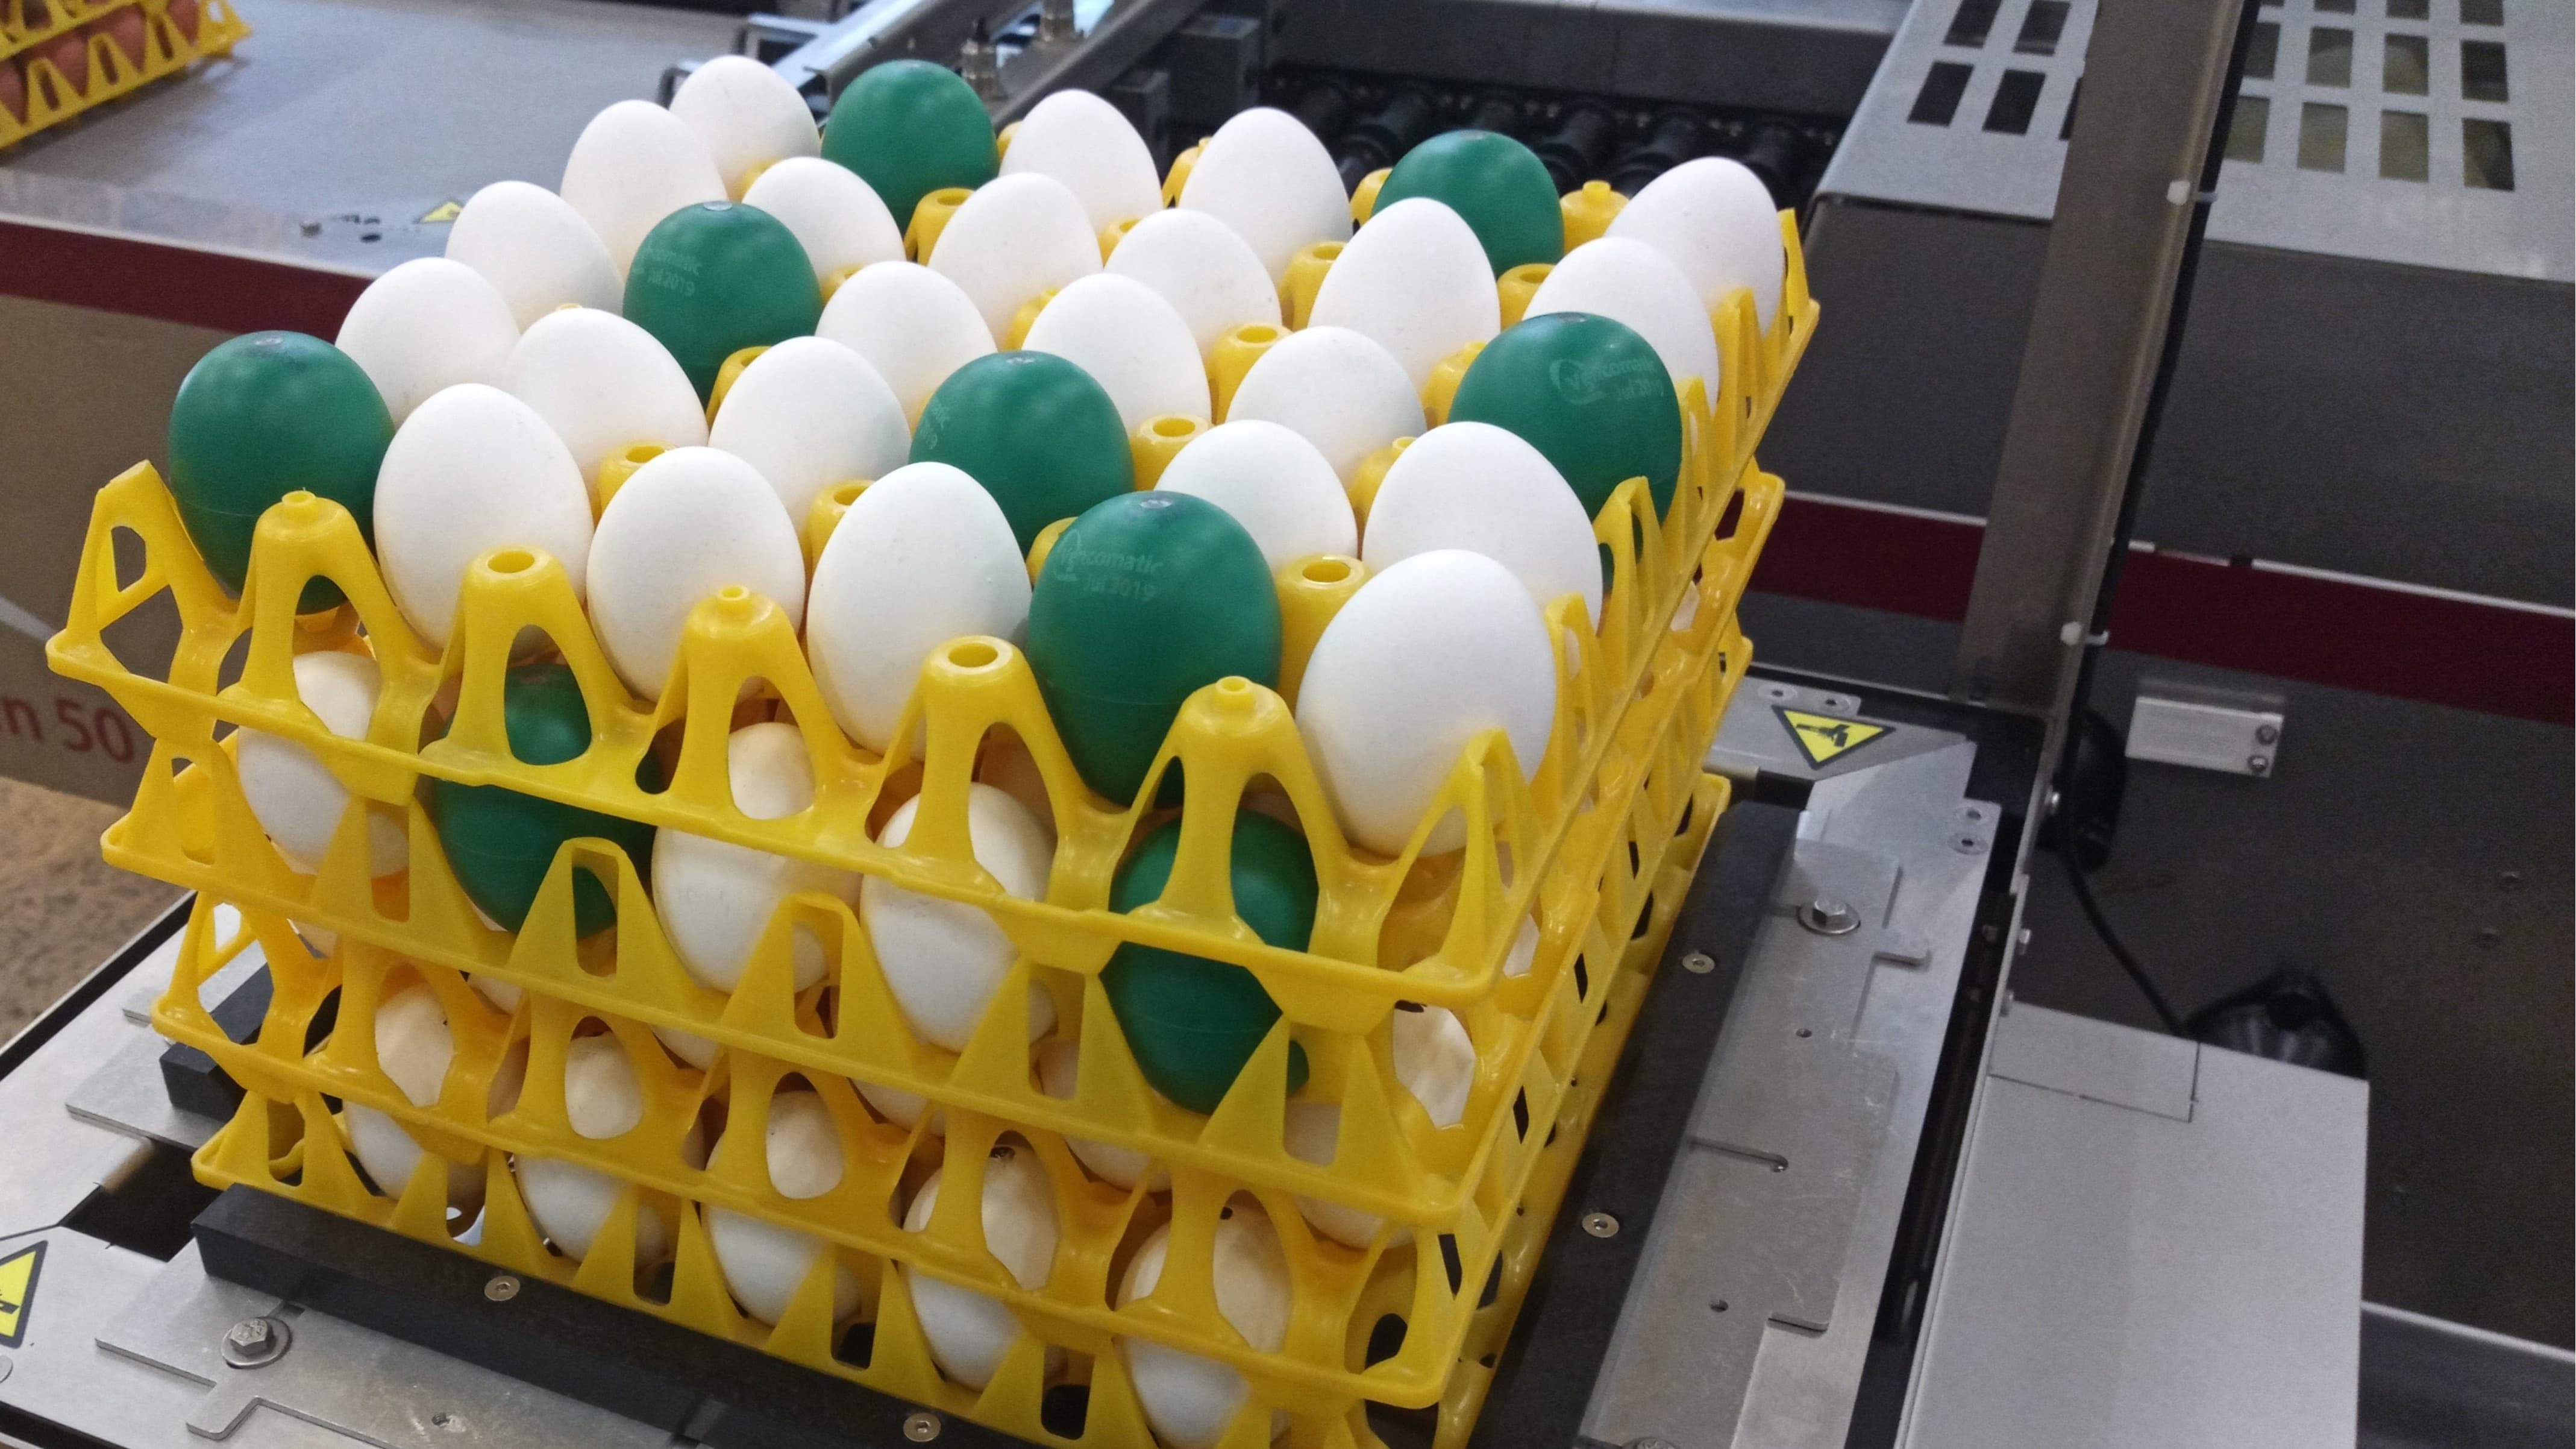 Höckerstapler mit elektronischen Eiern